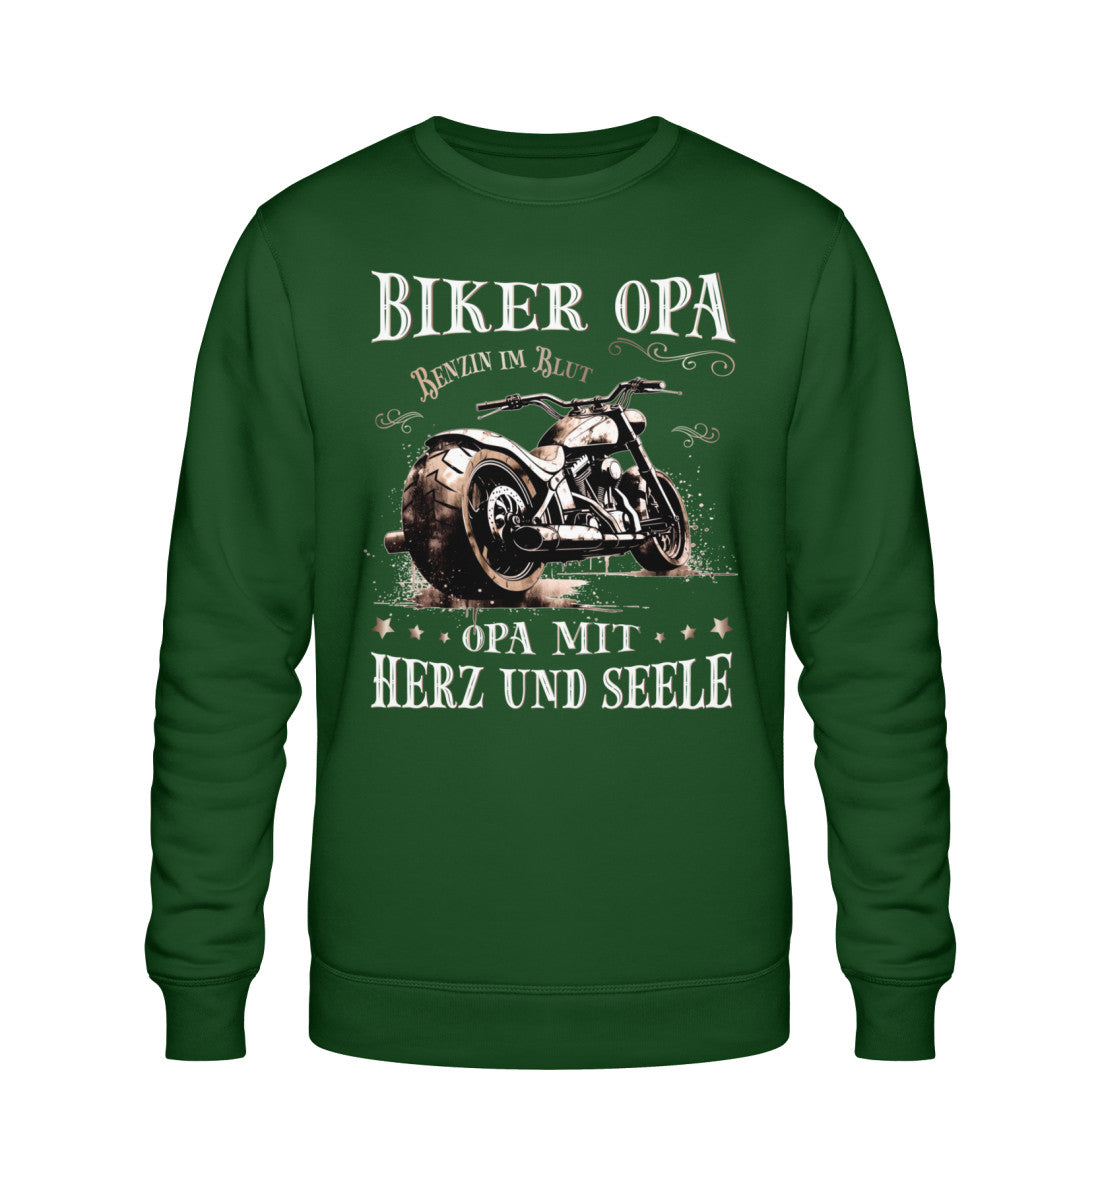 Ein Biker Sweatshirt für Motorradfahrer von Wingbikers mit dem Aufdruck, Biker Opa - Benzin im Blut - Opa mit Herz und Seele, in dunkelgrün.